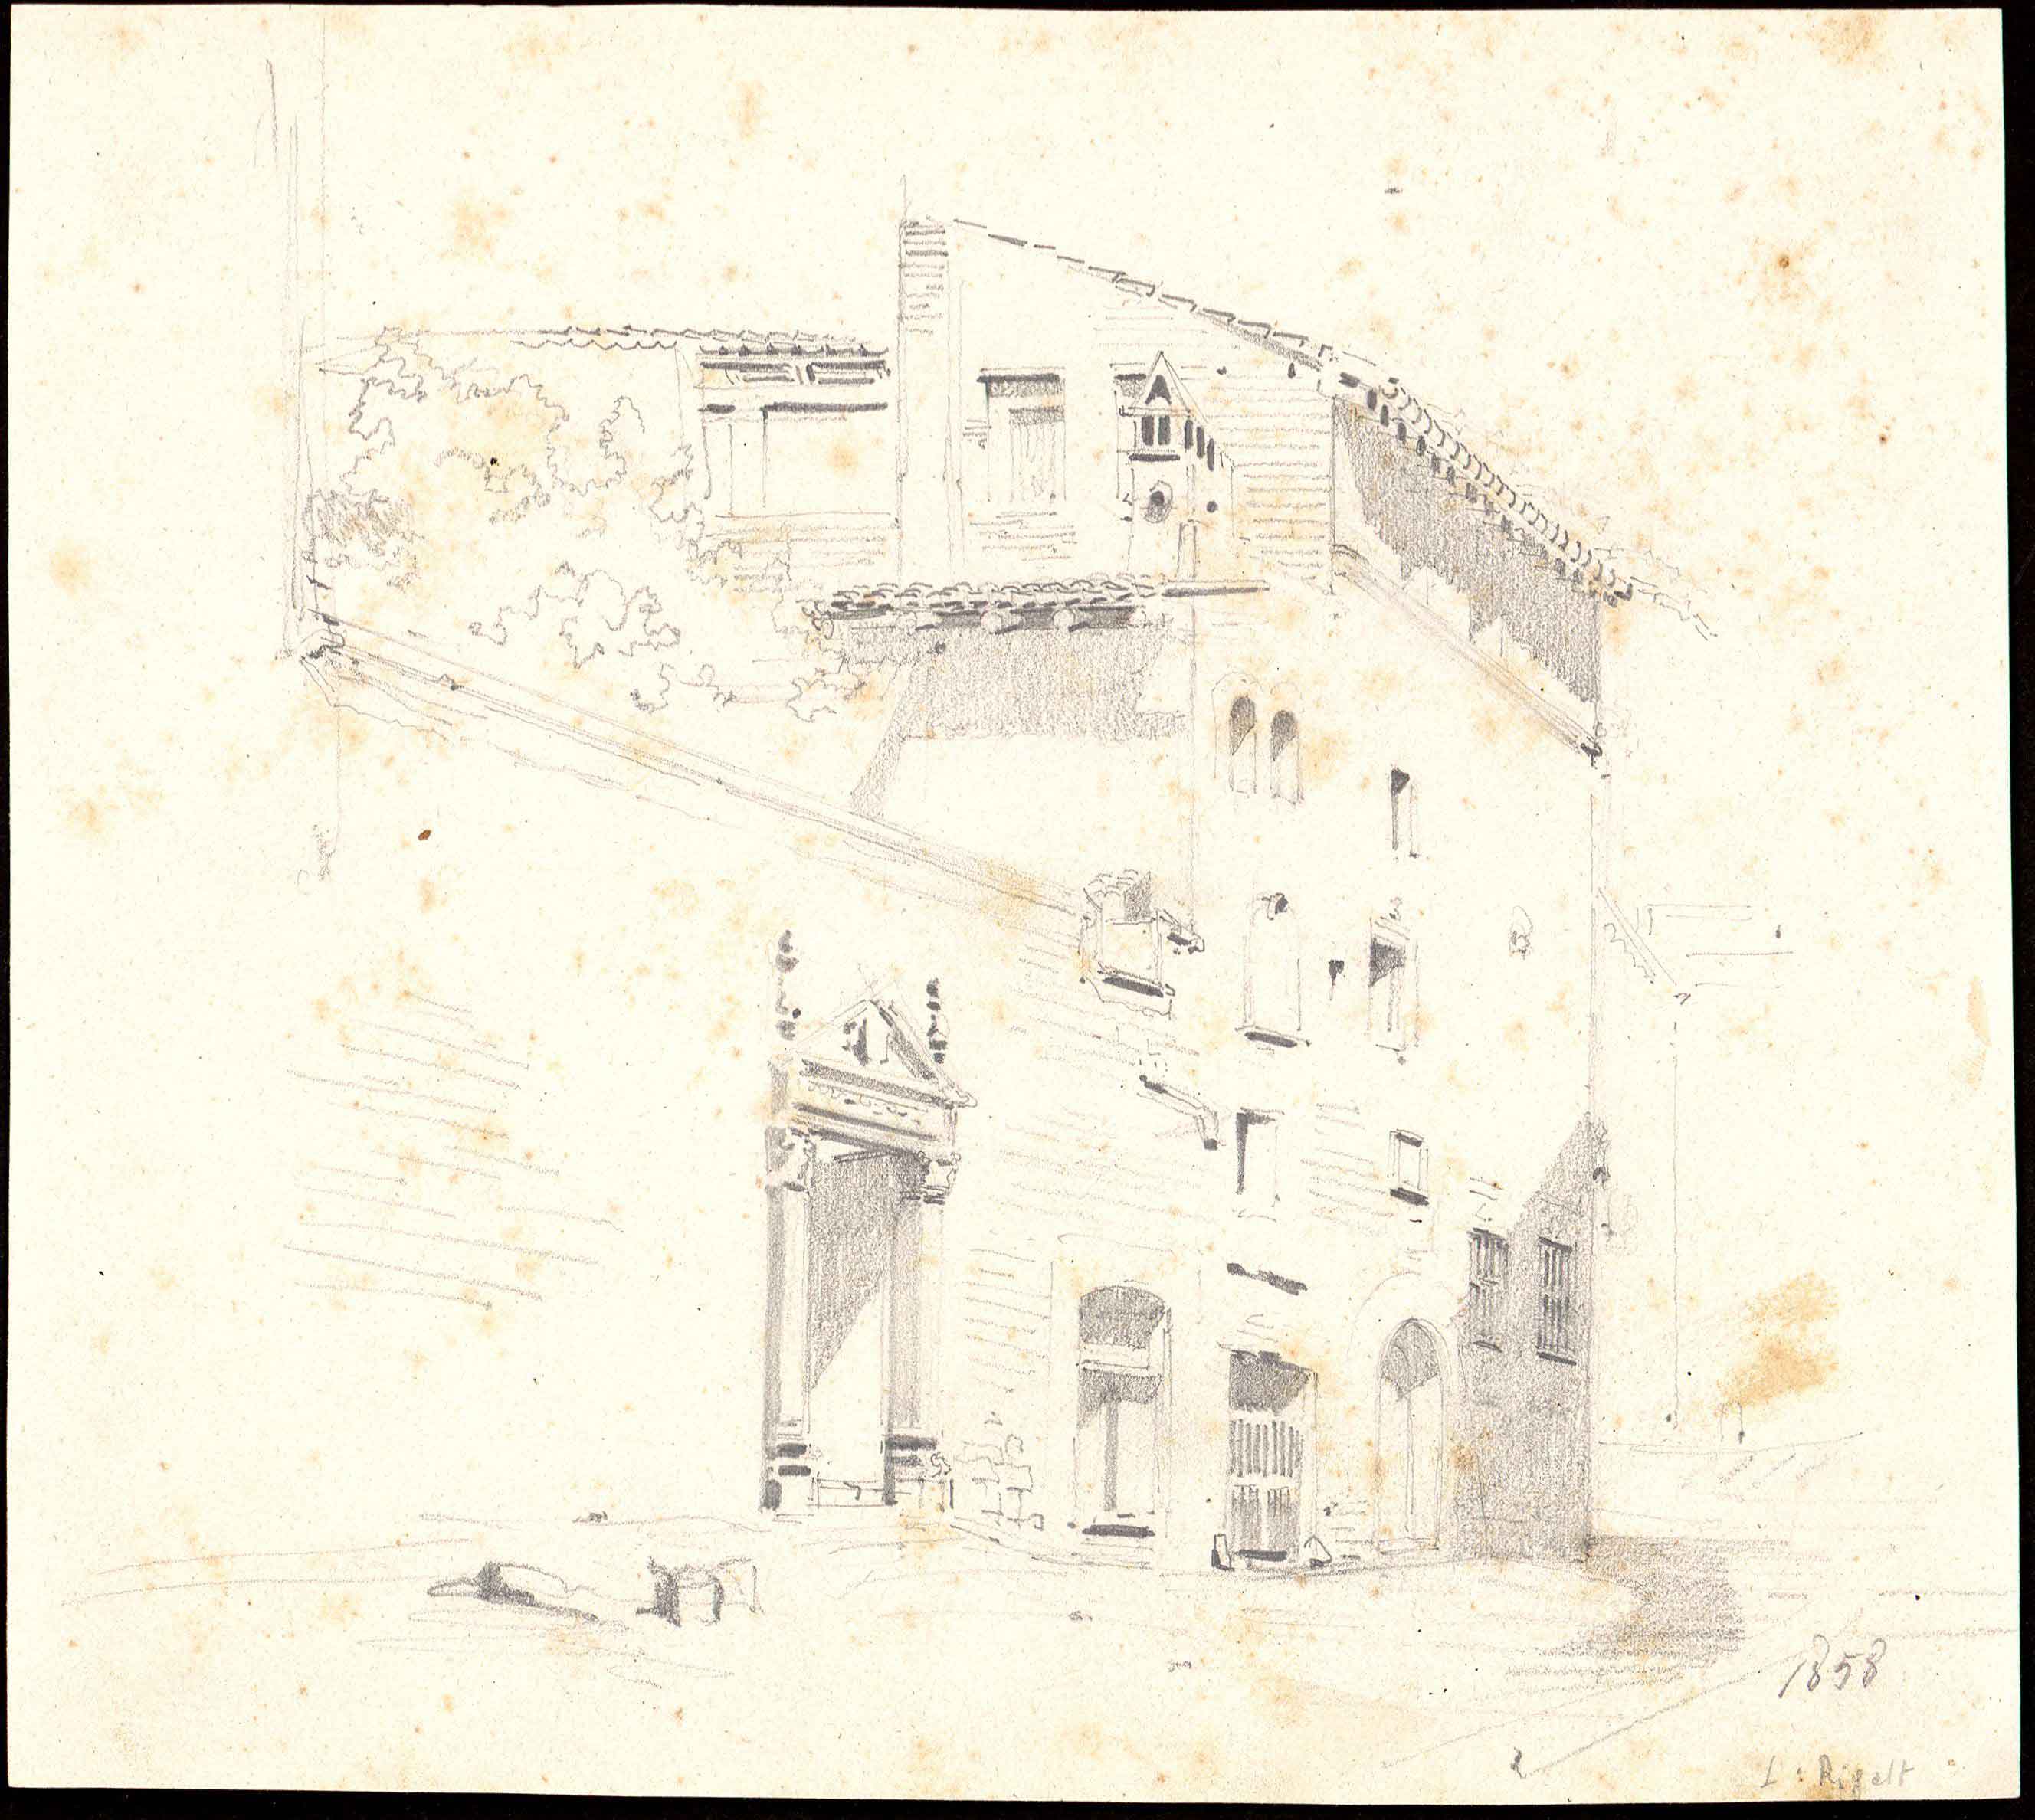 Façana del carrer Santa Llúcia, de Jaume Serra Gibert. 1858